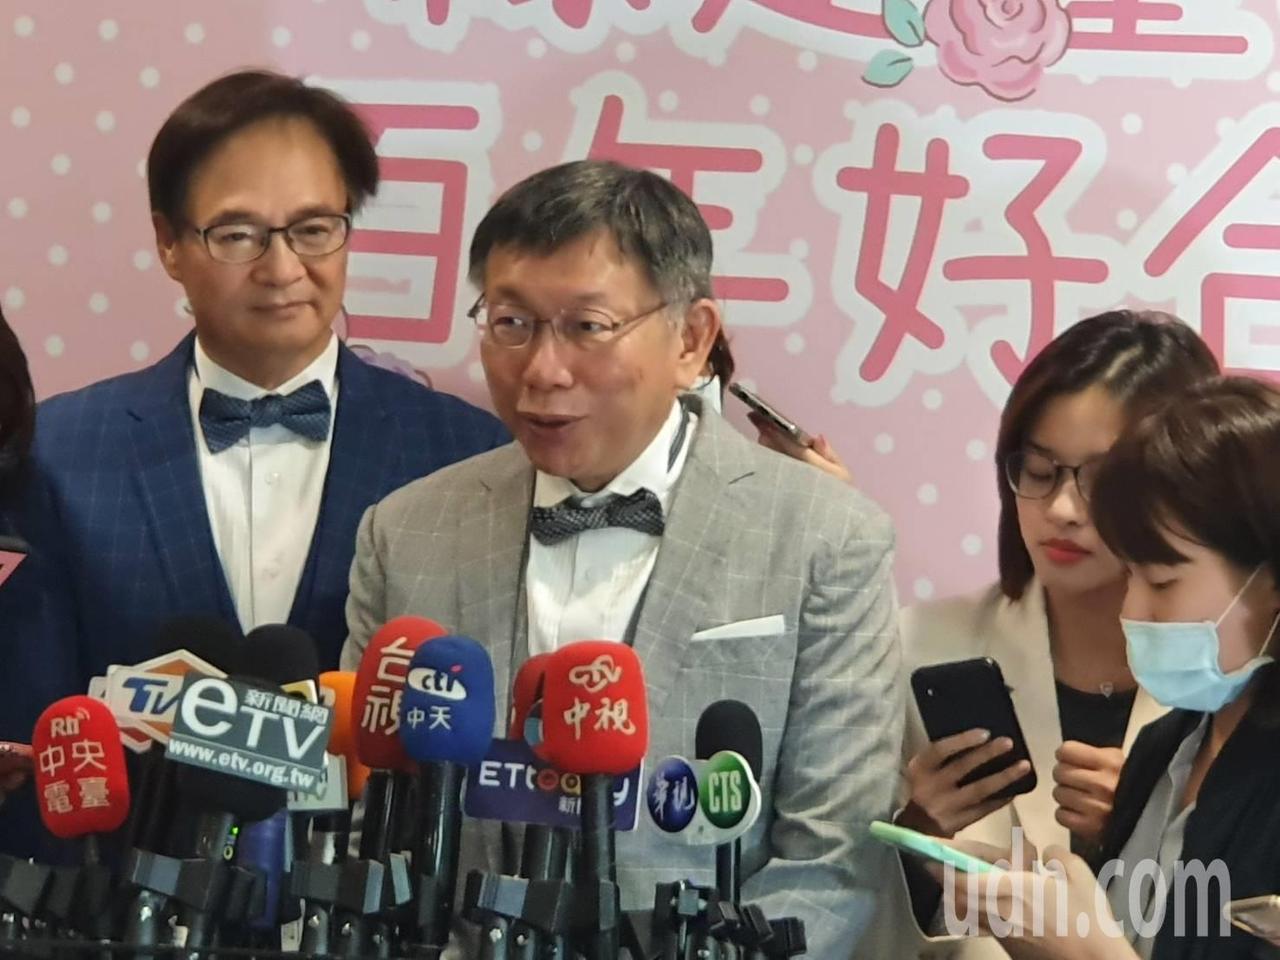 台北市長柯文哲下午出席北市聯合婚禮時受訪。記者楊正海／攝影